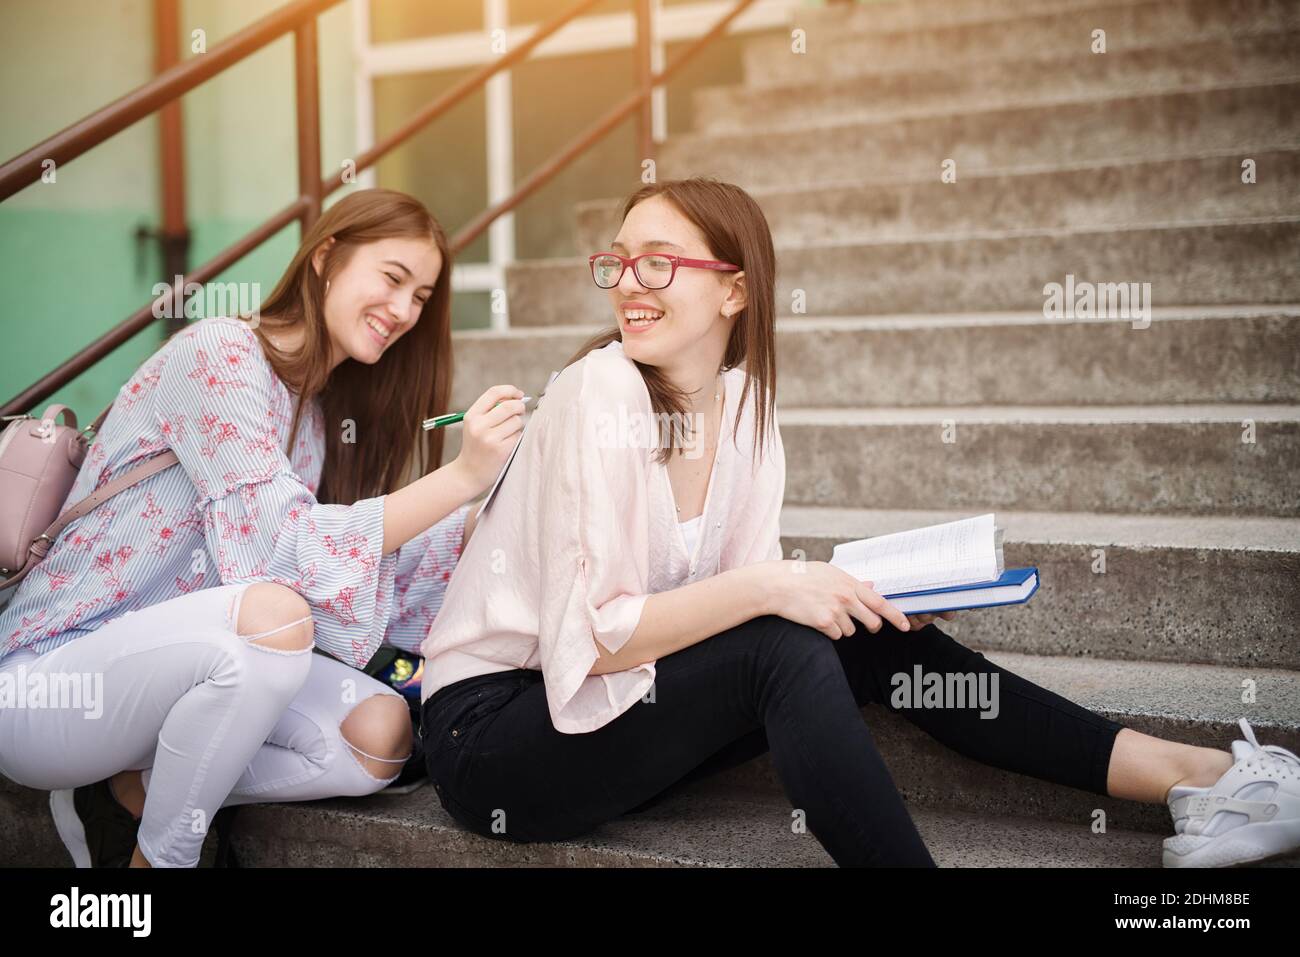 Zwei liebenswert verspielte High School Mädchen machen Hausaufgaben zusammen, während einer von ihnen hält Schulnoten auf der Rückseite eines anderen Mädchens. Stockfoto